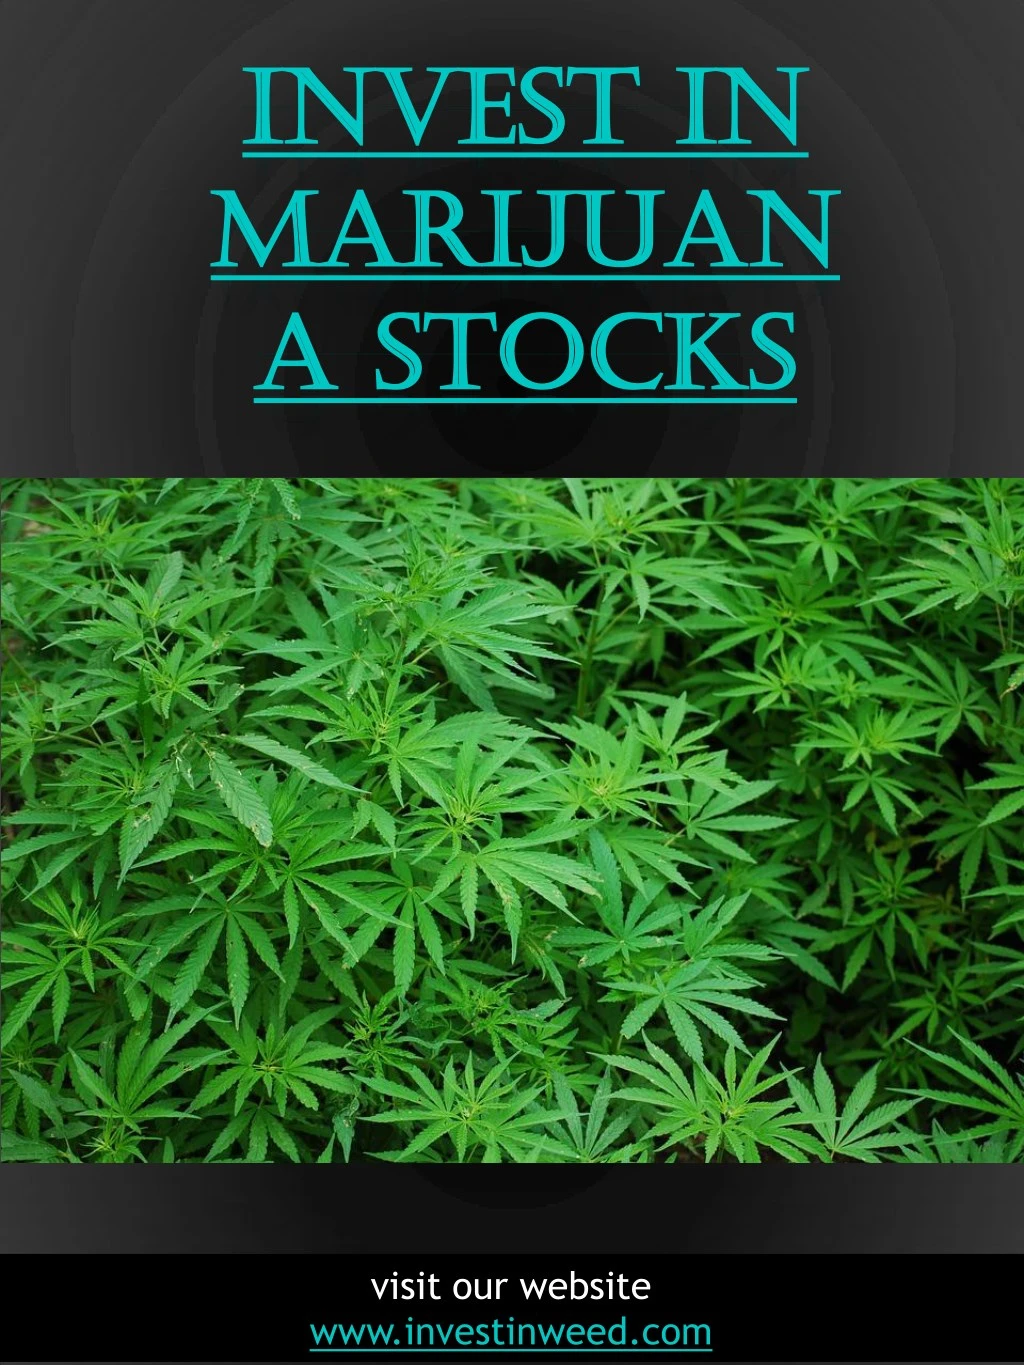 invest in invest in marijuan marijuan a stocks